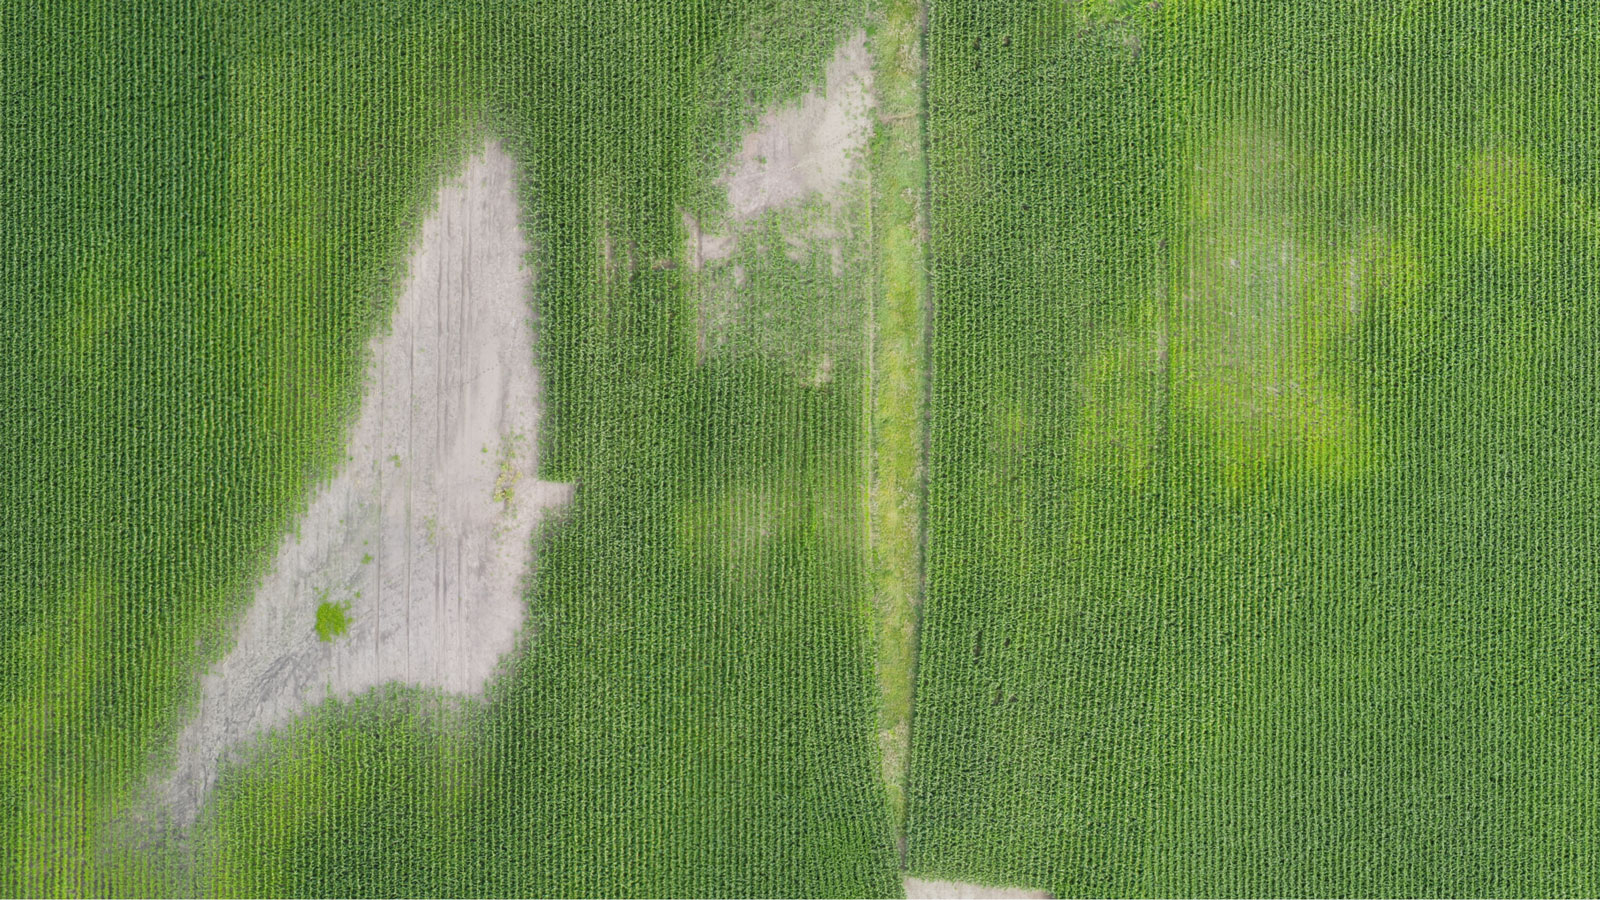 Salida de ortomosaico para mapeo agrícola usando dron agrícola